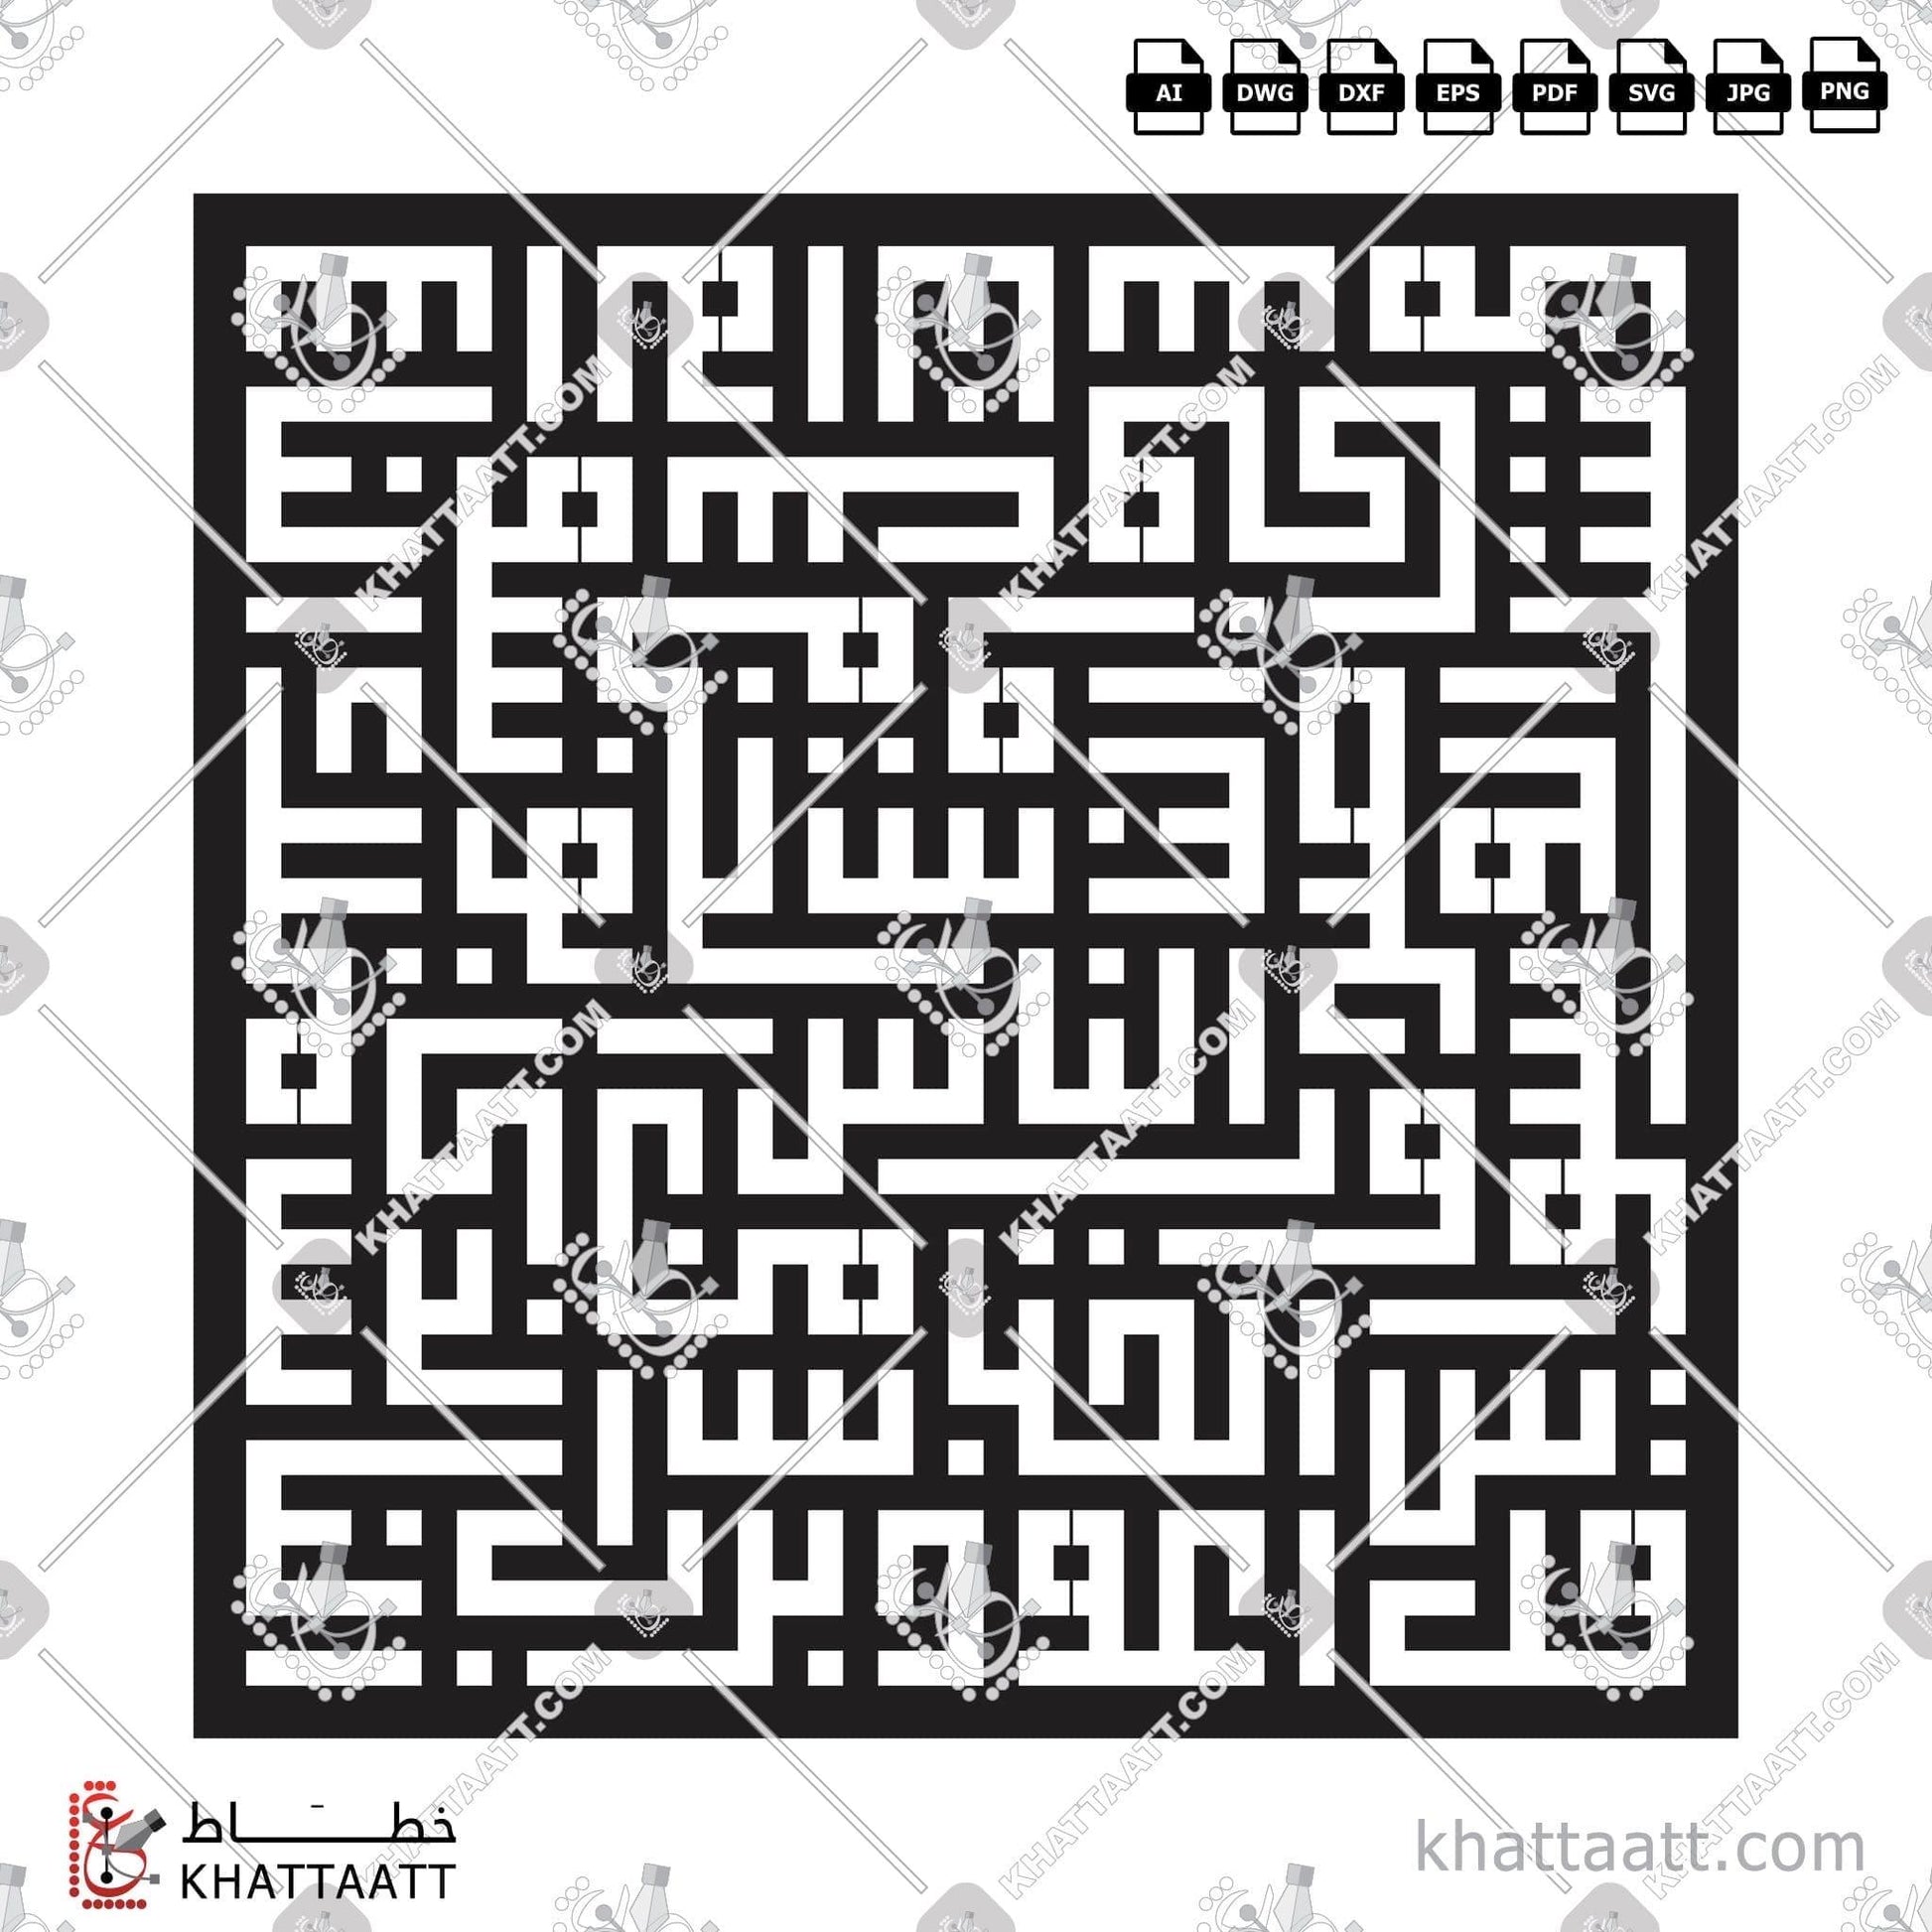 Download Arabic Calligraphy of Surat An-Naas - سورة الناس in Kufi - الخط الكوفي in vector and .png